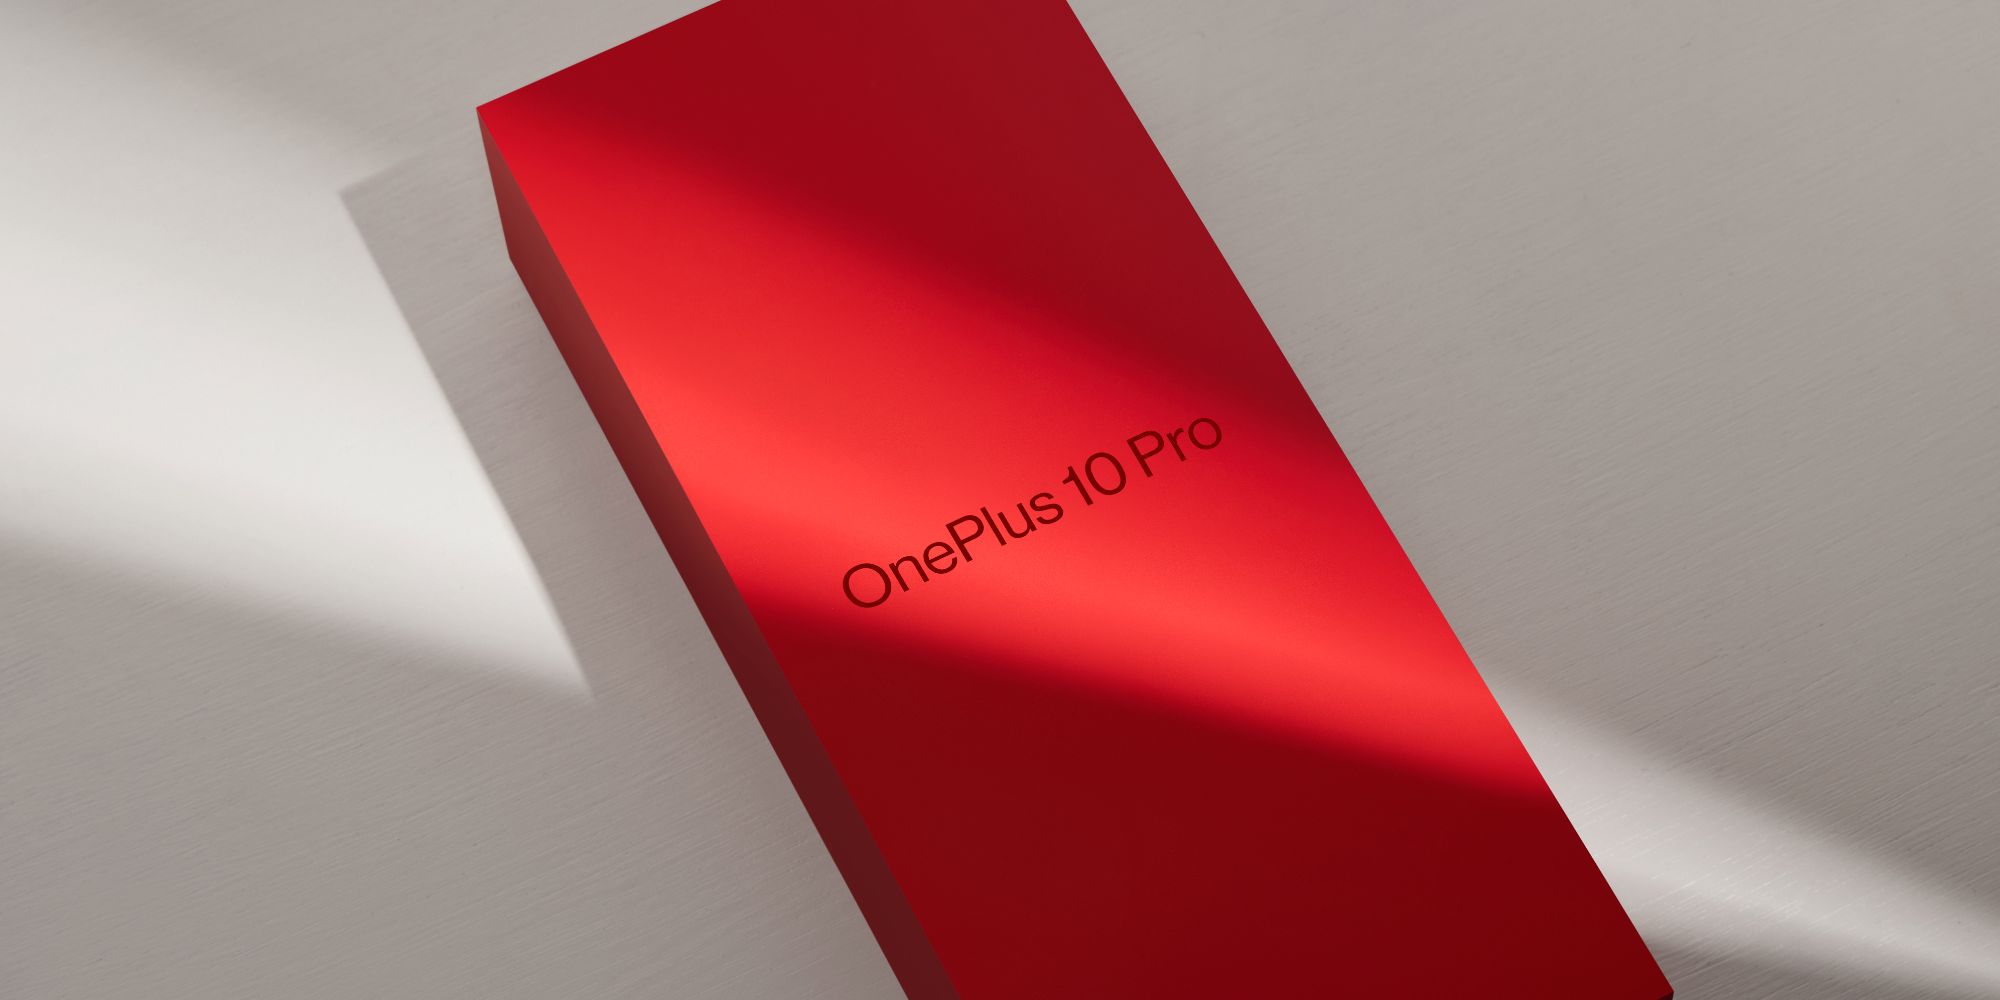 OnePlus acaba de anunciar un evento de lanzamiento de OnePlus 10 Pro en EE. UU. para el 31 de marzo